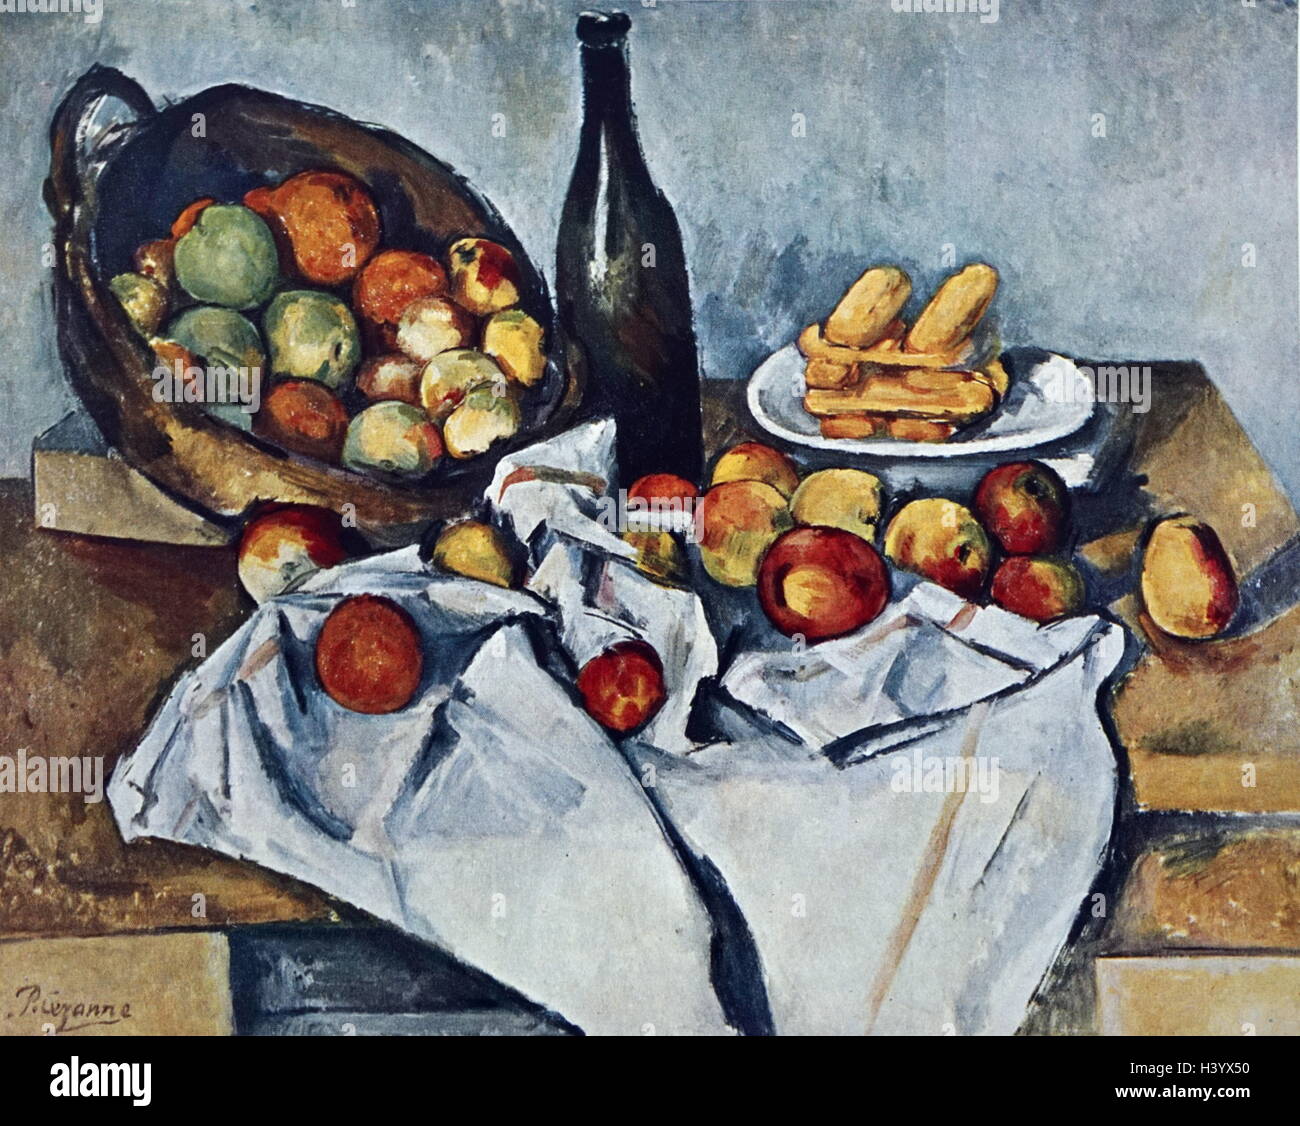 Gemälde mit dem Titel "noch Leben mit Korb mit Äpfeln" von Paul Cézanne (1839-1906), ein französischer Künstler und post-impressionistischen Maler. Vom 19. Jahrhundert Stockfoto